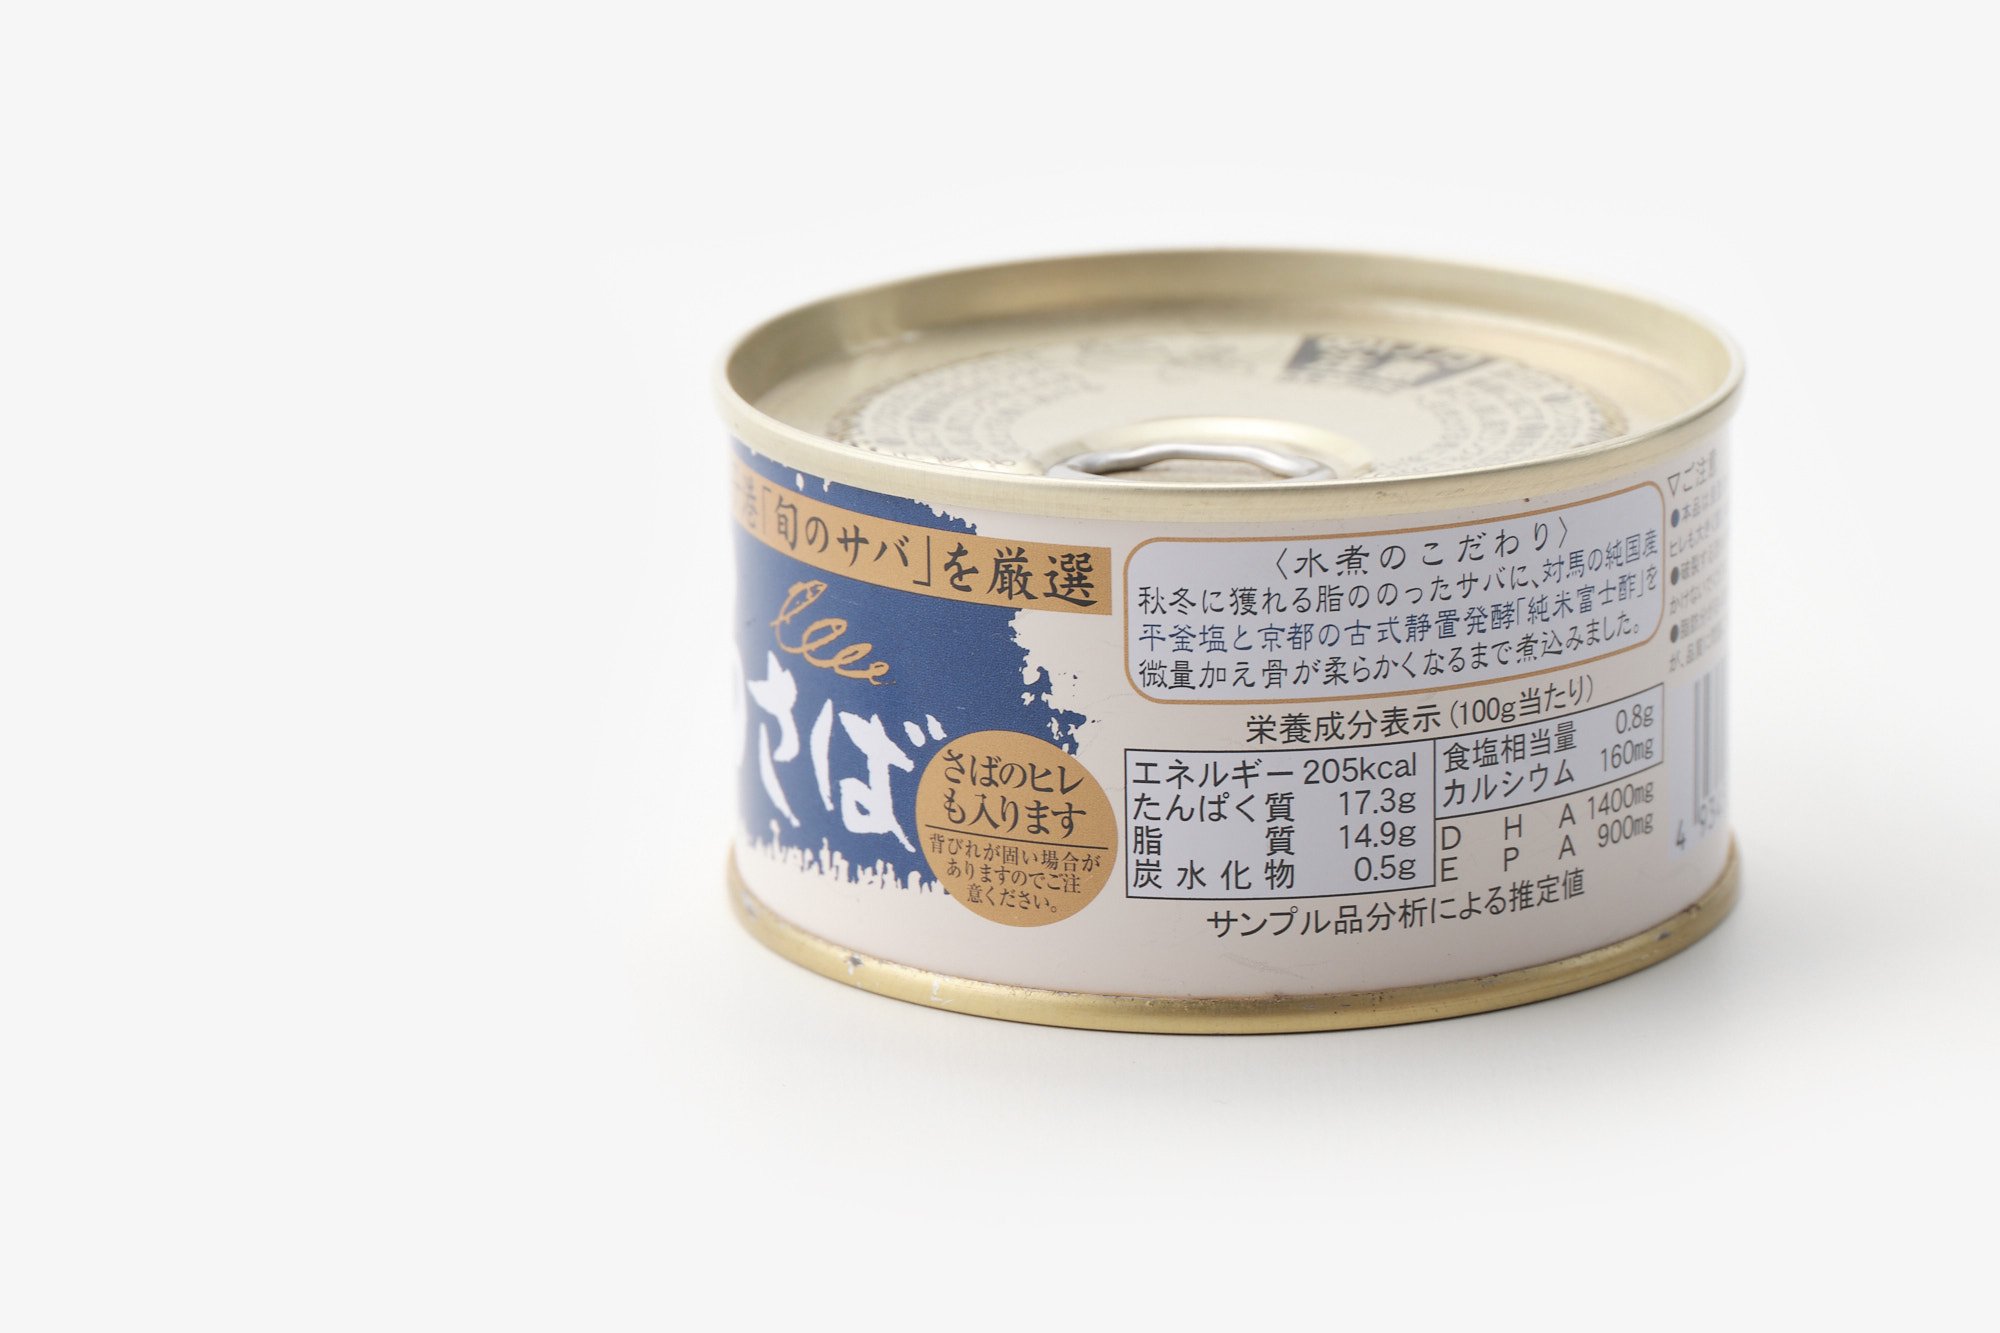 缶詰 さばオリーブオイル漬け サバ缶 保存料 化学調味料無添加 150g 1缶 TOMINAGA 魚缶 備蓄 防災